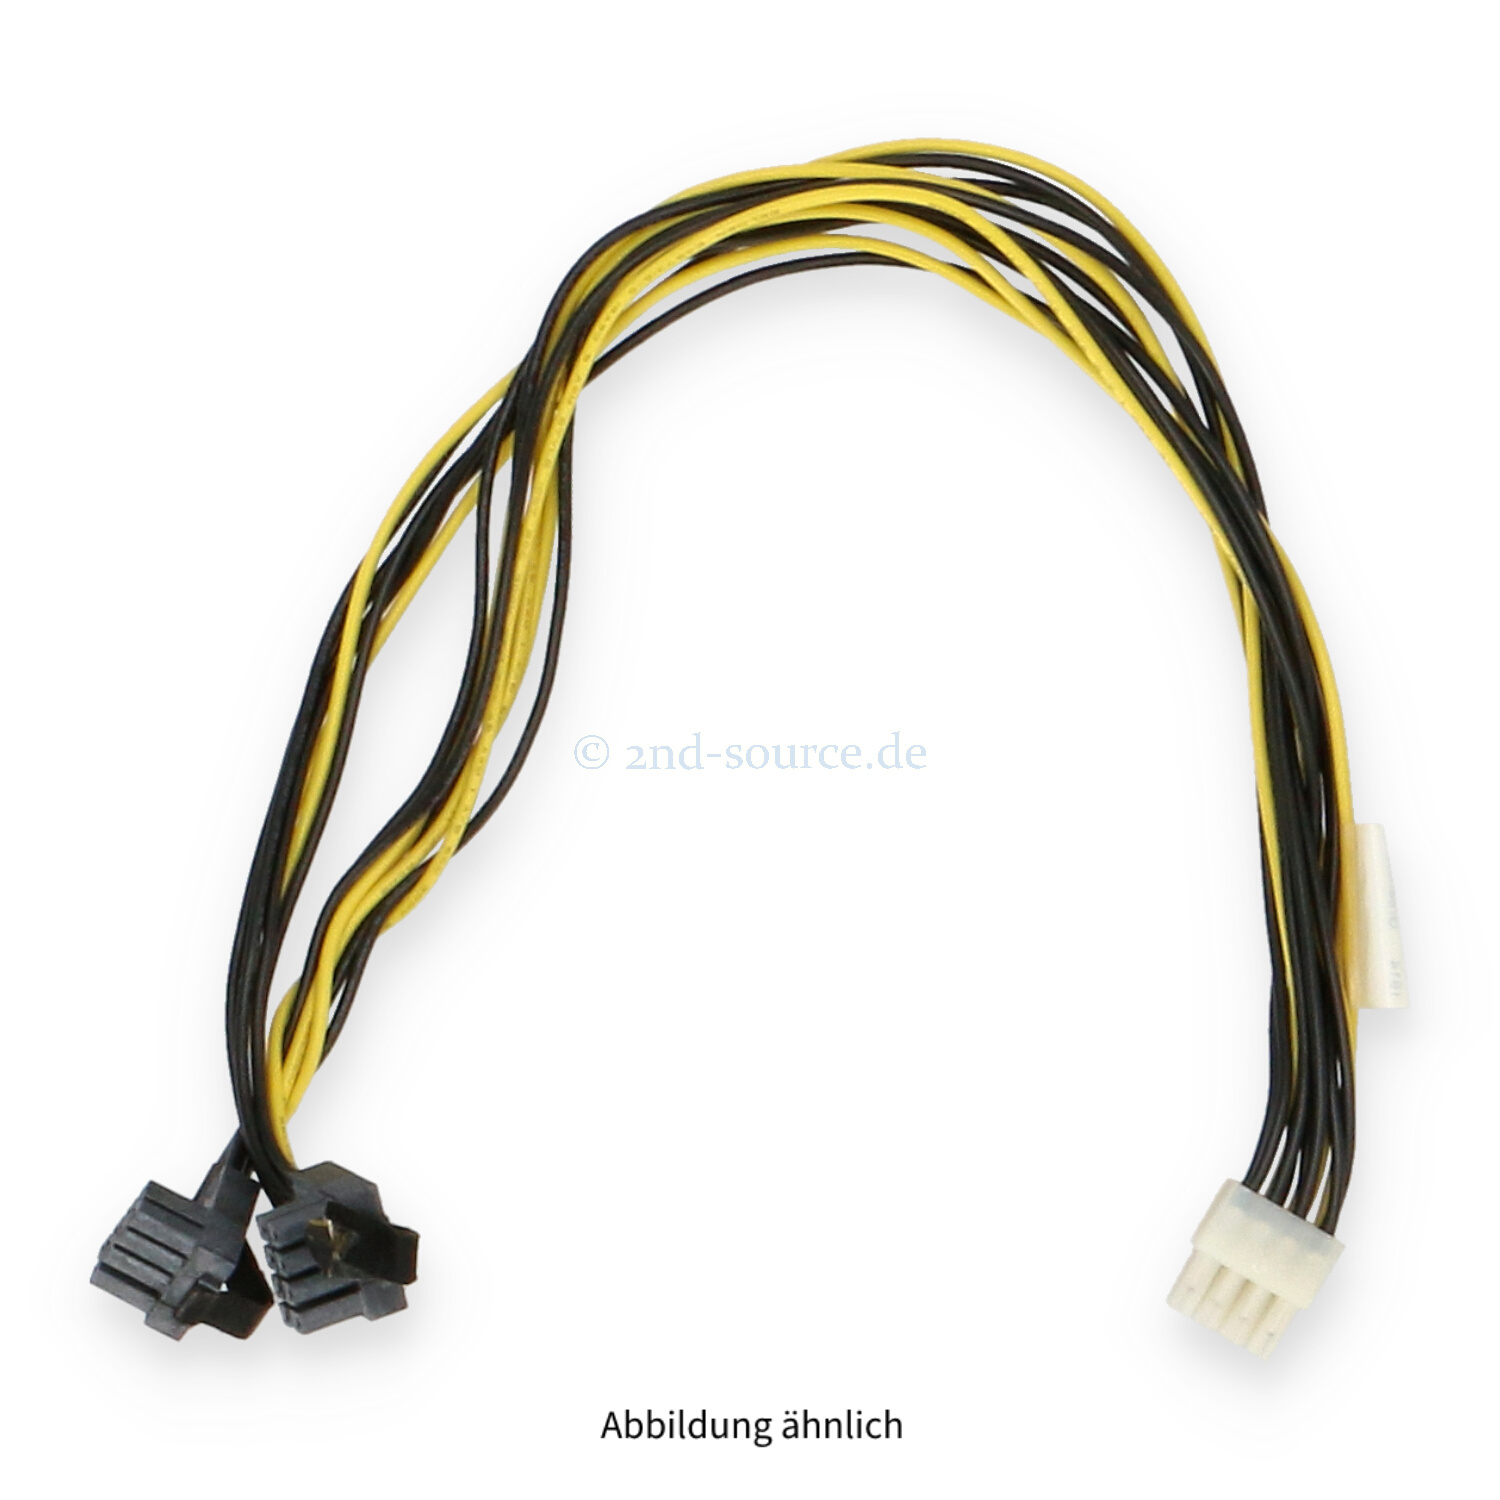 Gigabyte 0.40m 8-pin to 2x 8-pin GPU Cable G291-281 25CRI-35030A-G5R